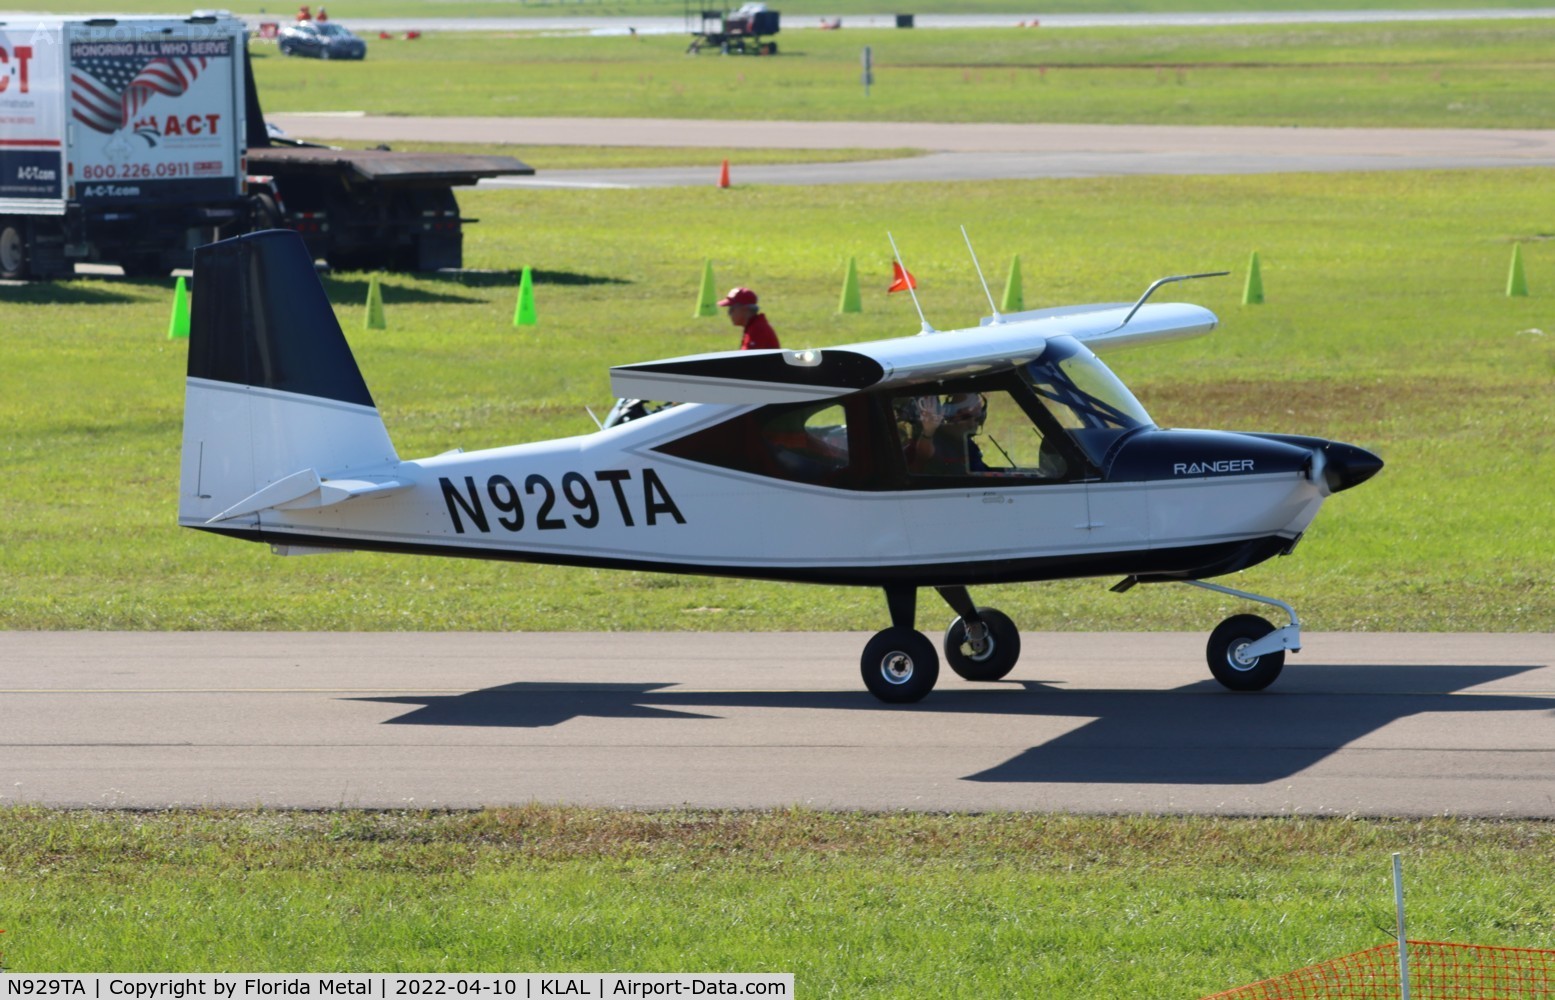 N929TA, 2021 Vashon Aircraft Ranger R7 C/N 10189, Ranger R7